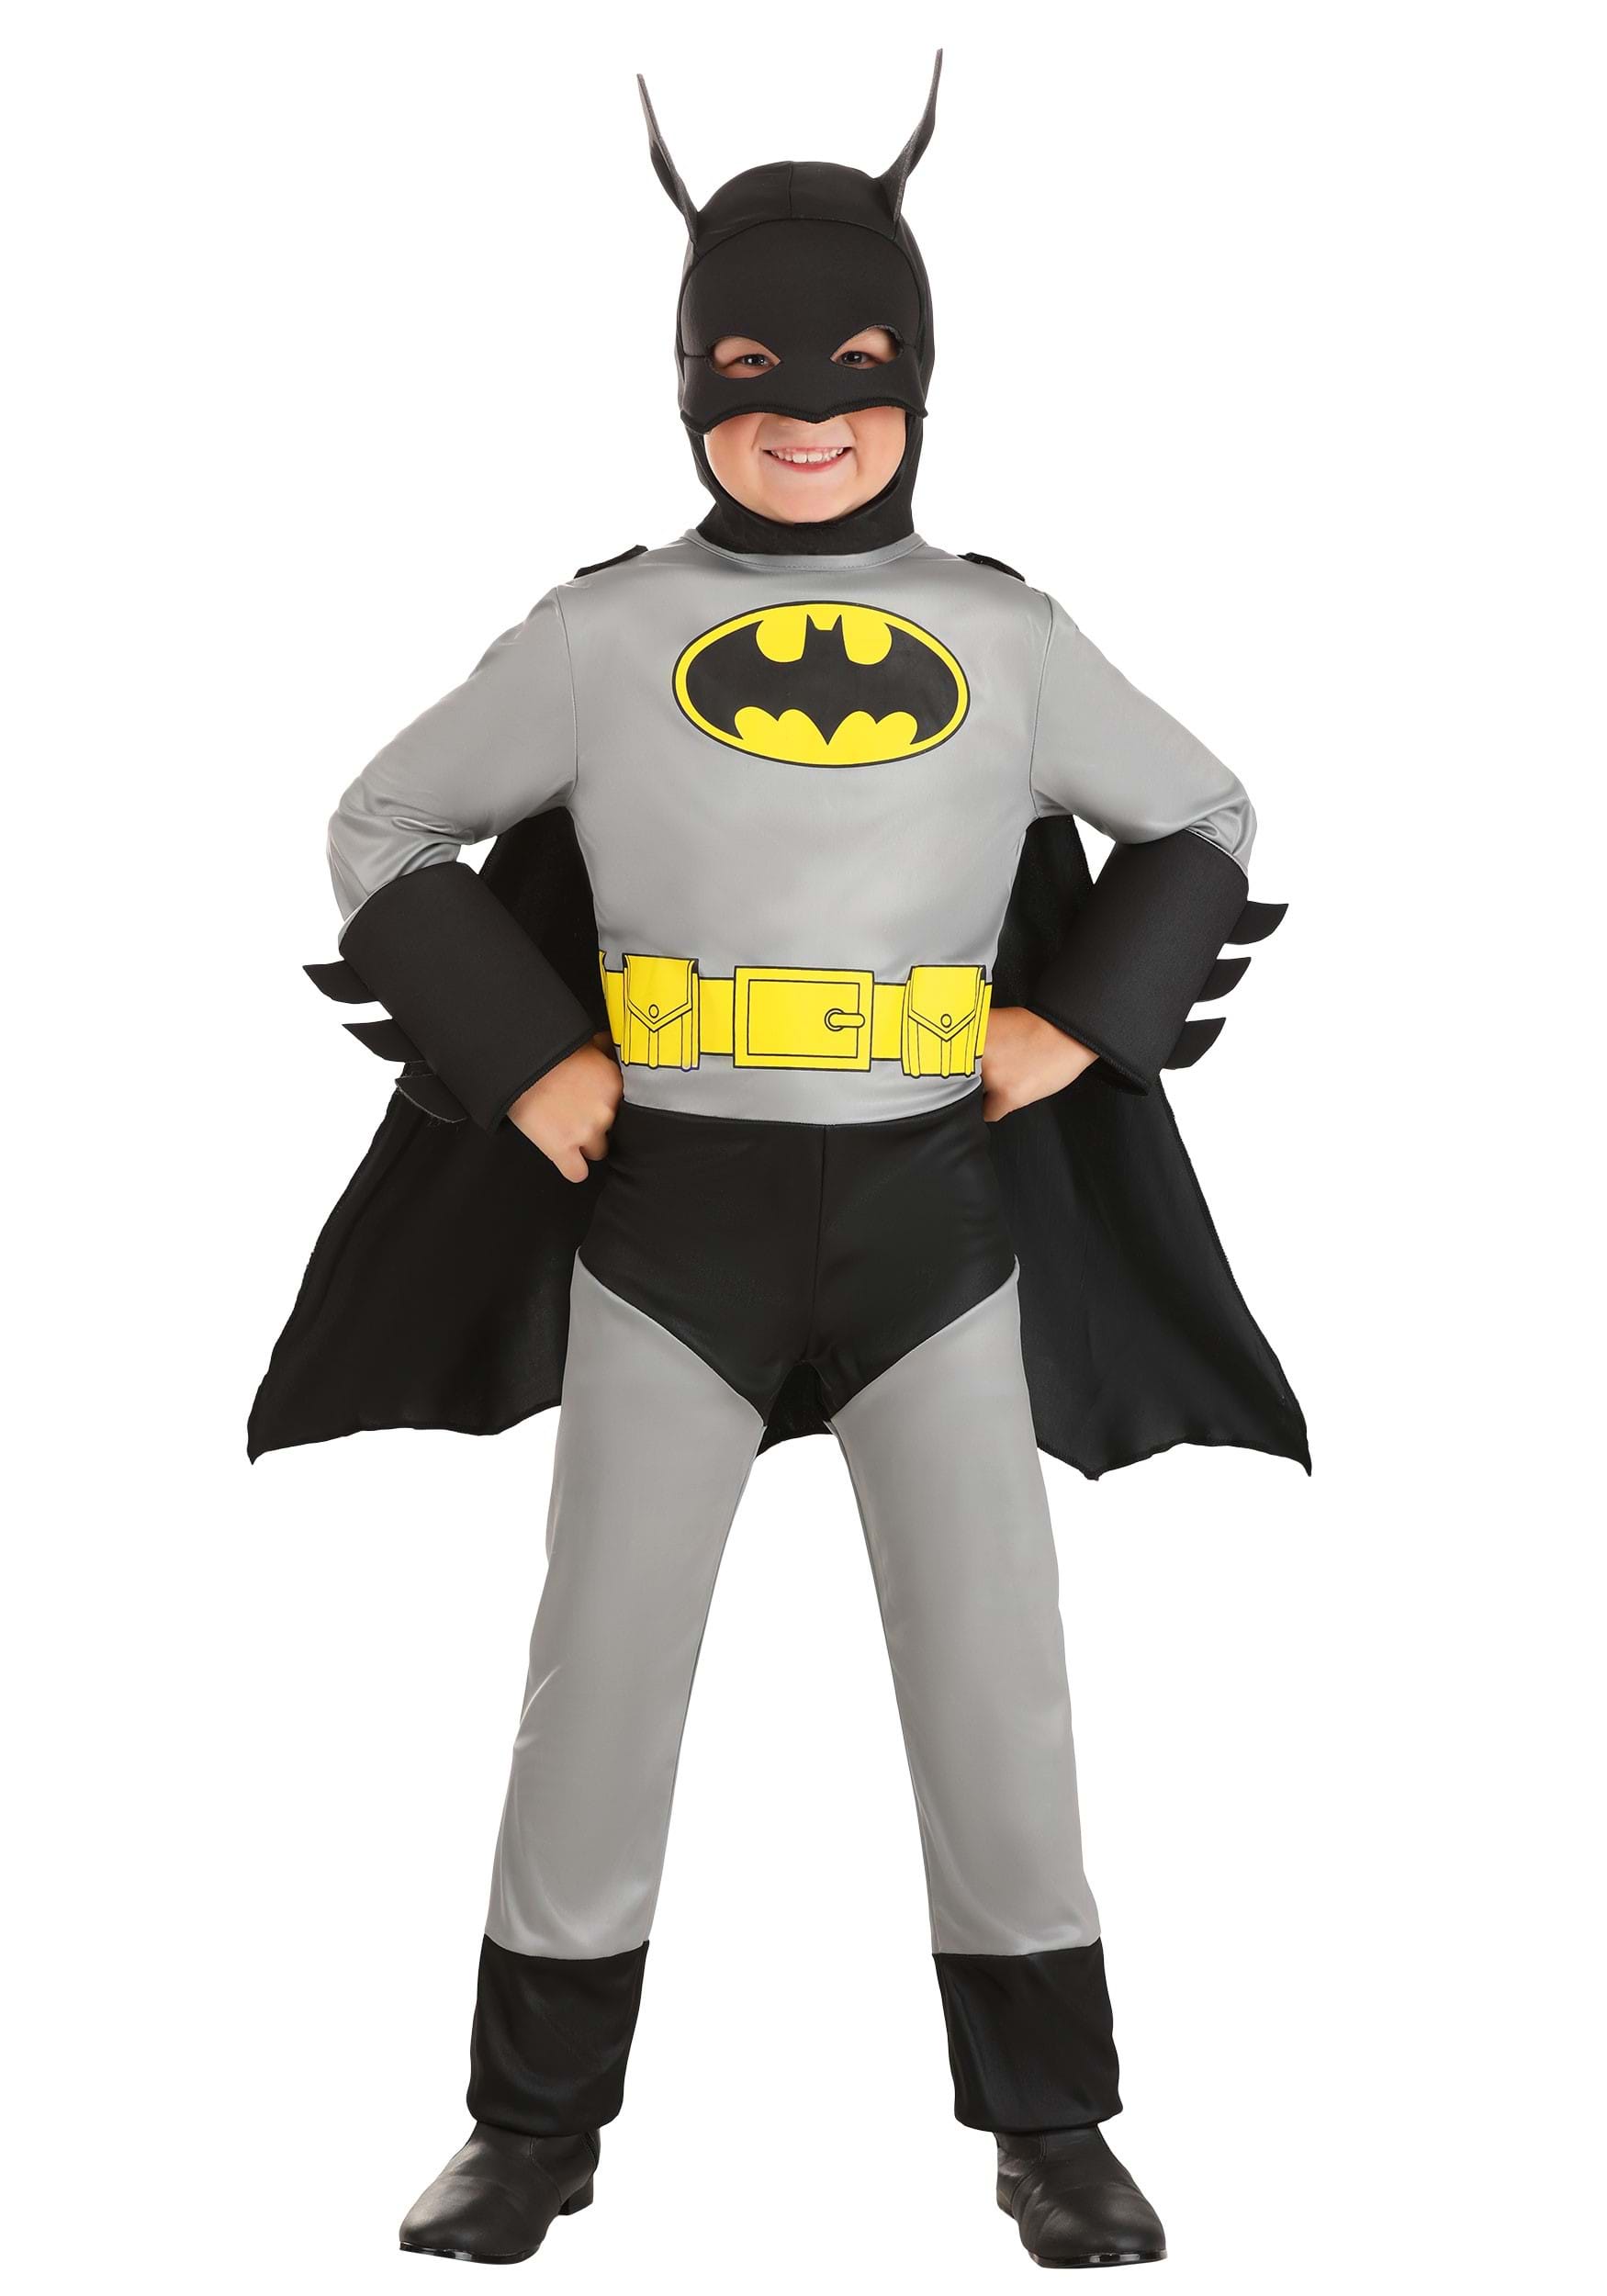 Classic Batman Costume for Kids